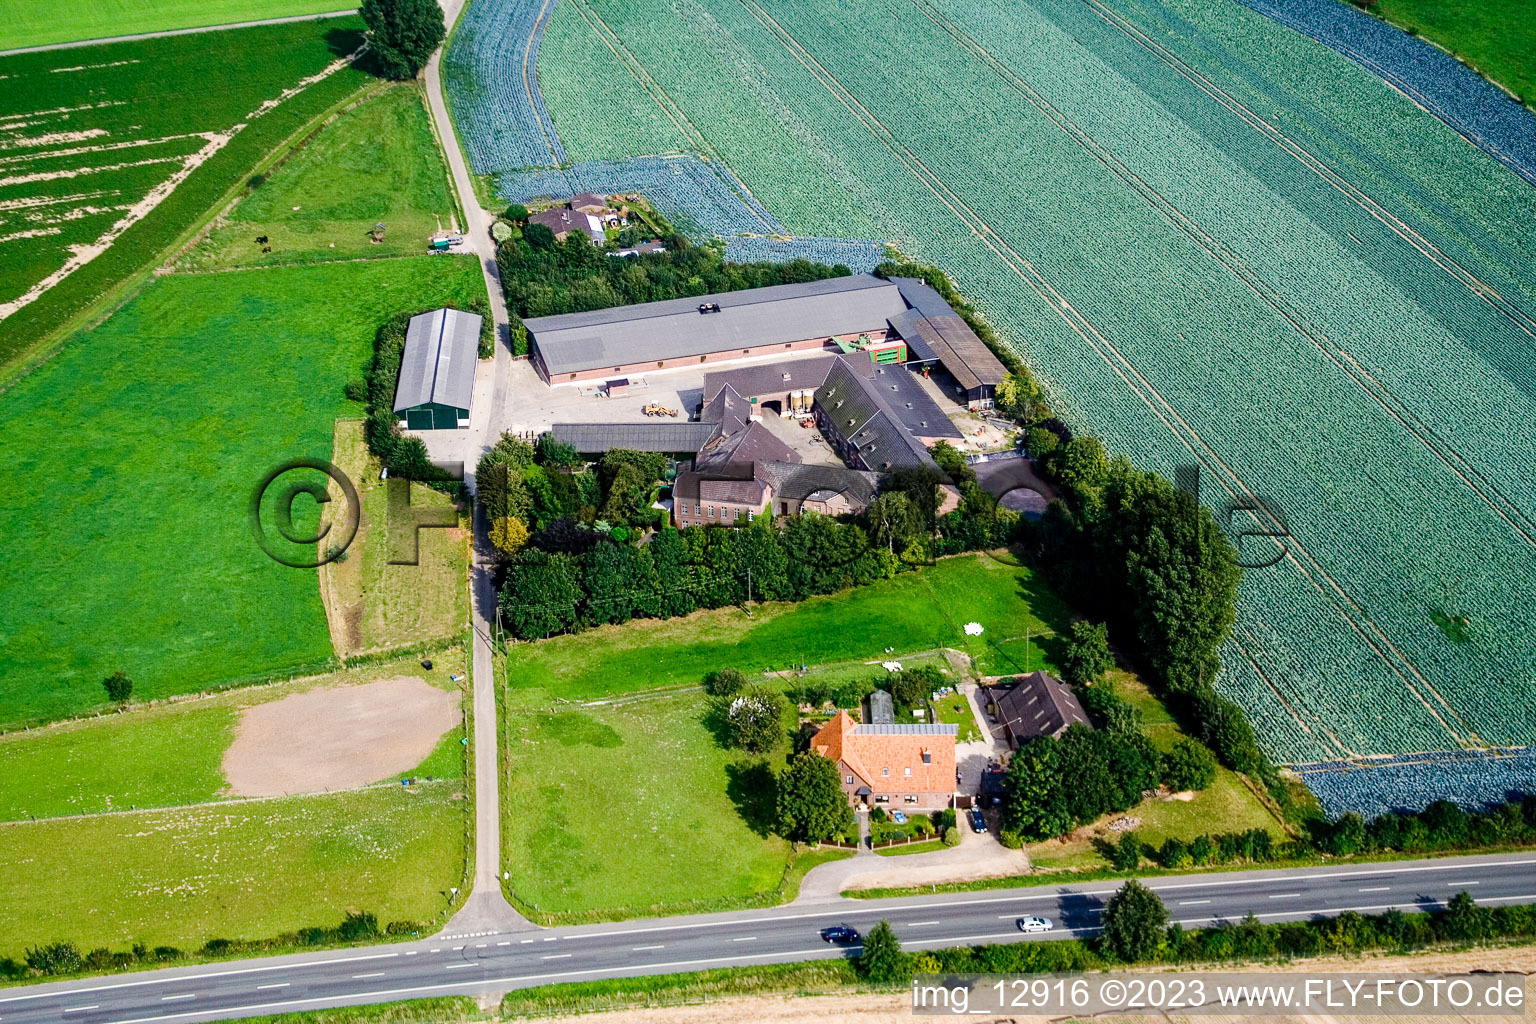 Zwischen Kerken und Limburg im Bundesland Nordrhein-Westfalen, Deutschland aus der Drohnenperspektive